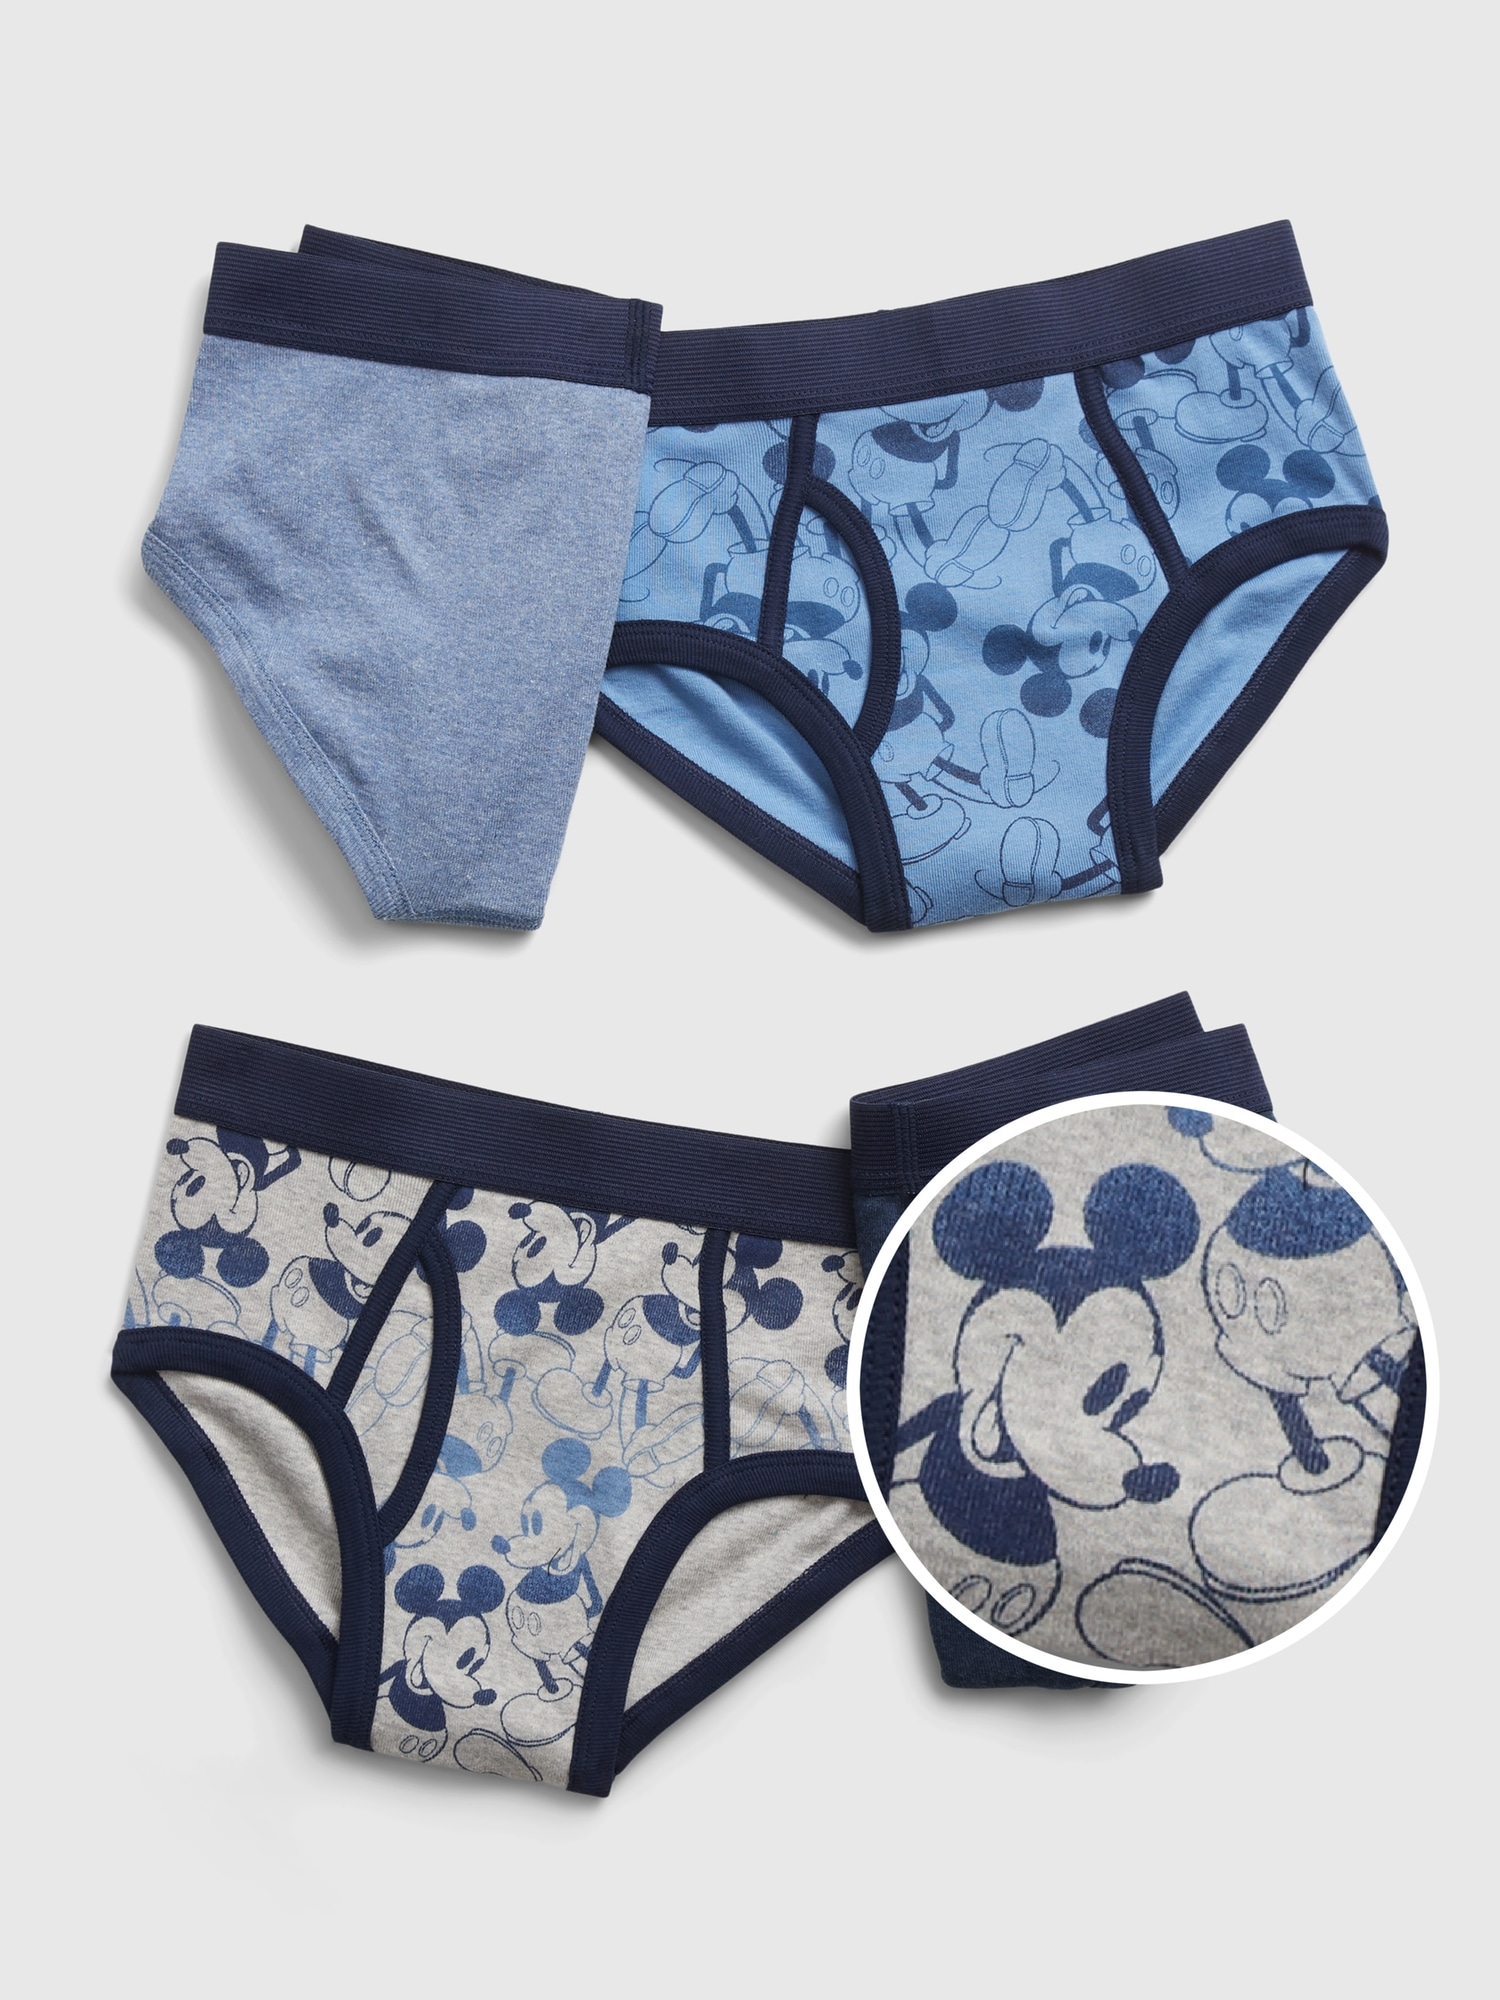 Disney Junior Mickey Mouse 3 Briefs Underwear 100% Cotton Size 2T